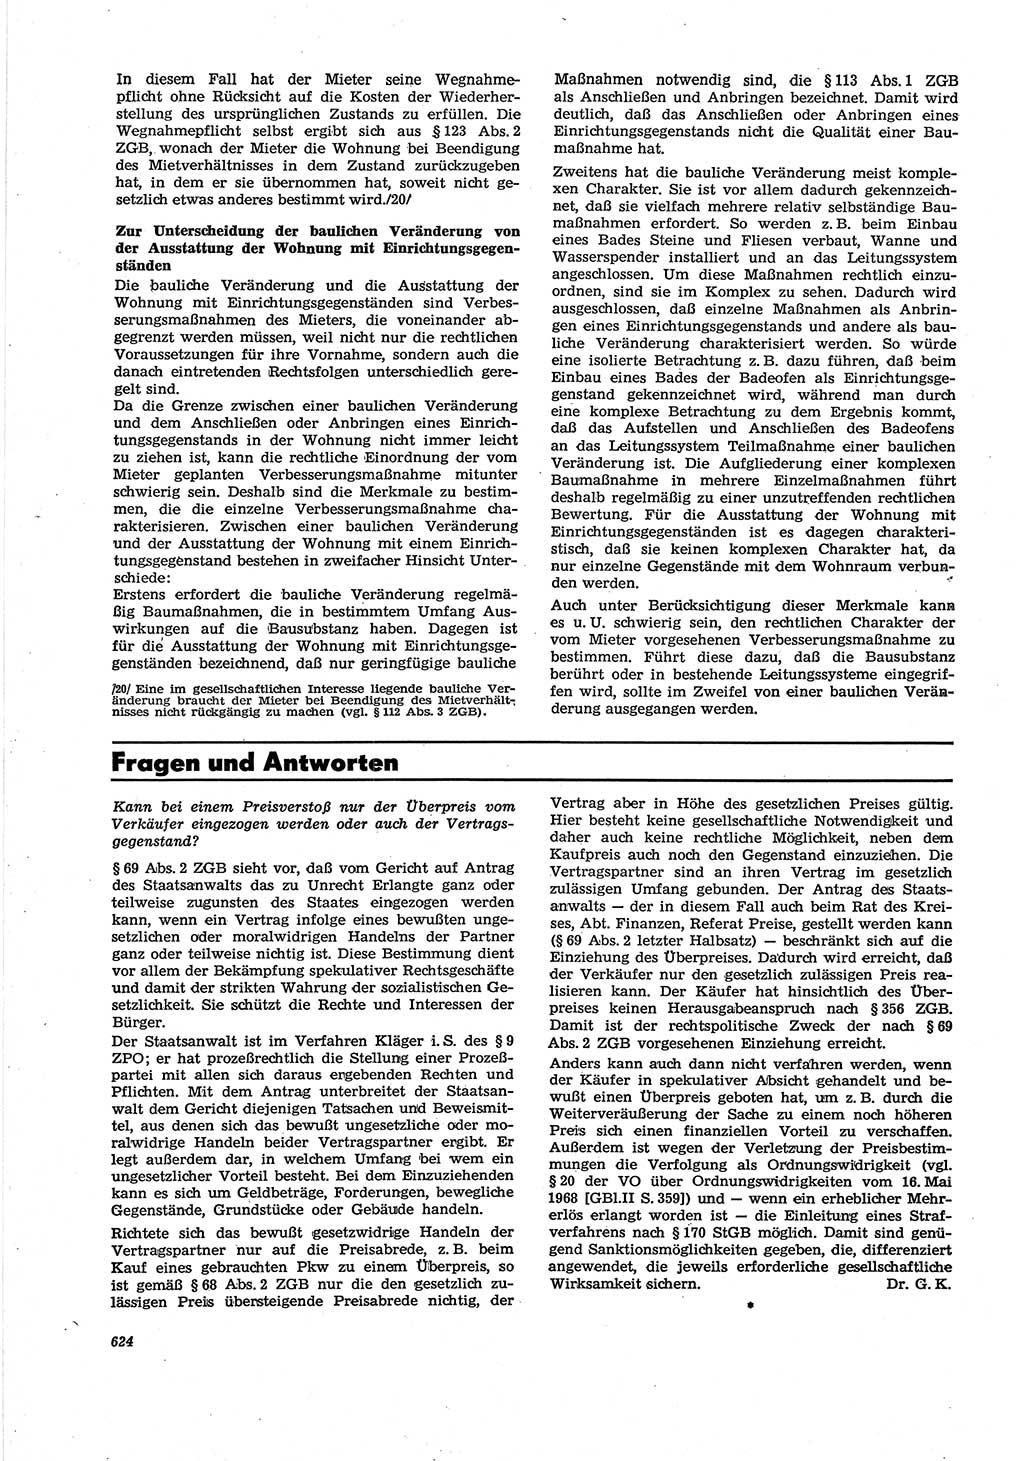 Neue Justiz (NJ), Zeitschrift für Recht und Rechtswissenschaft [Deutsche Demokratische Republik (DDR)], 30. Jahrgang 1976, Seite 624 (NJ DDR 1976, S. 624)